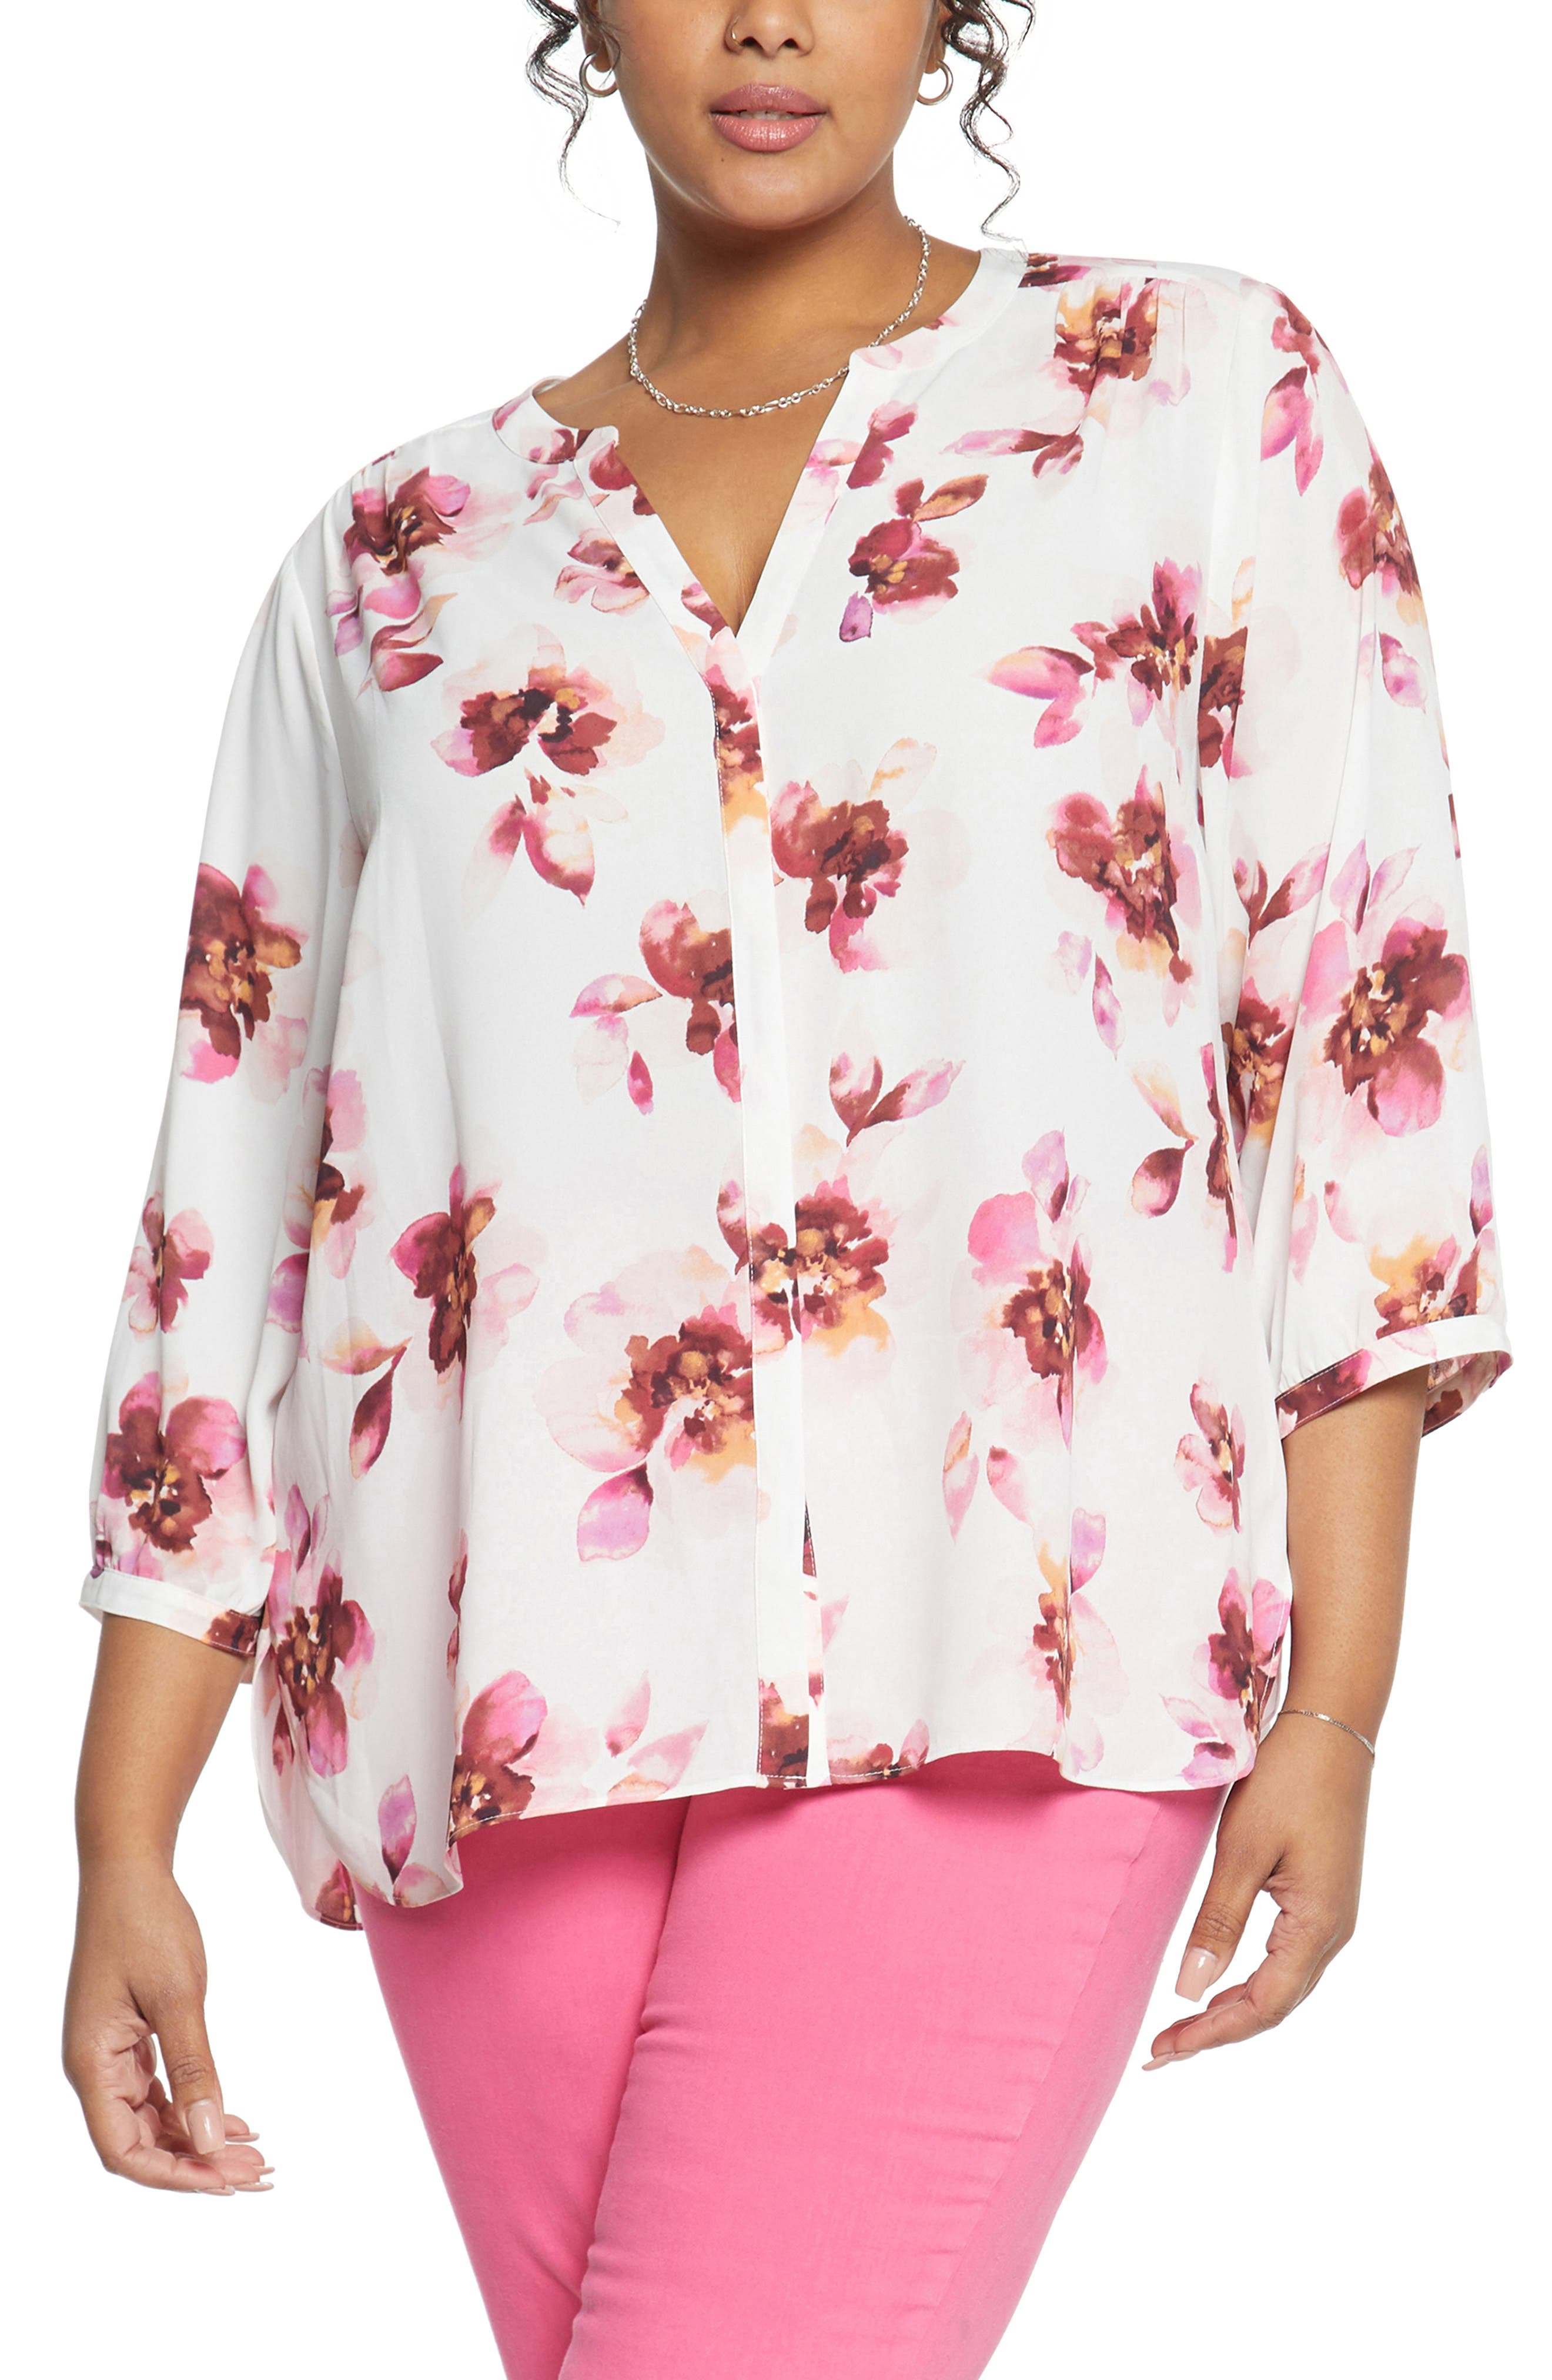 Women Retro Floral Print Top Button Plus Size Short Sleeve Blouse Tunic Shirt US